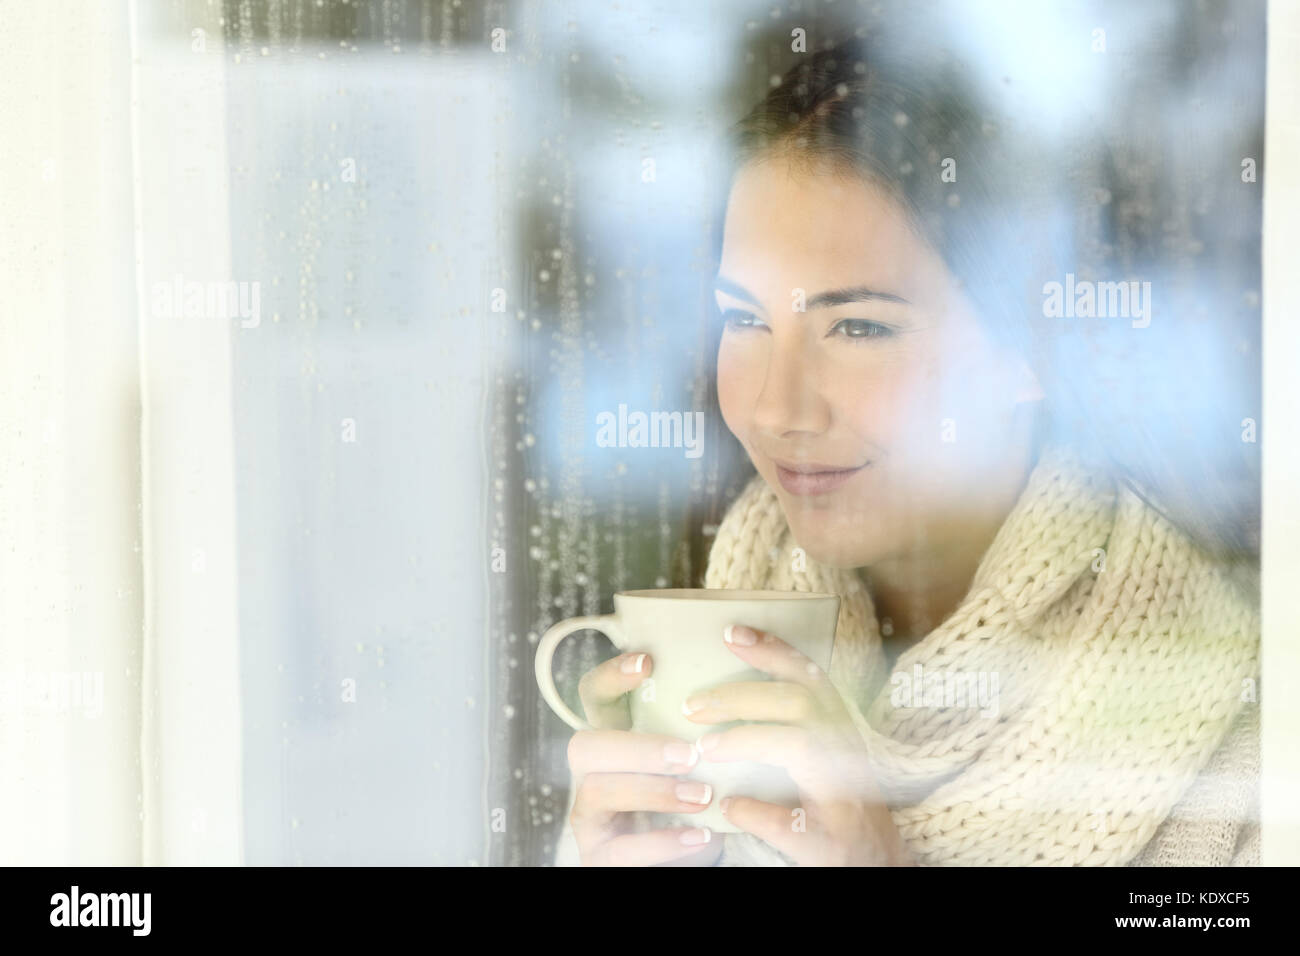 Ritratto di una ragazza di guardare attraverso una finestra tenendo una tazza di caffè in un giorno di pioggia di inverno Foto Stock